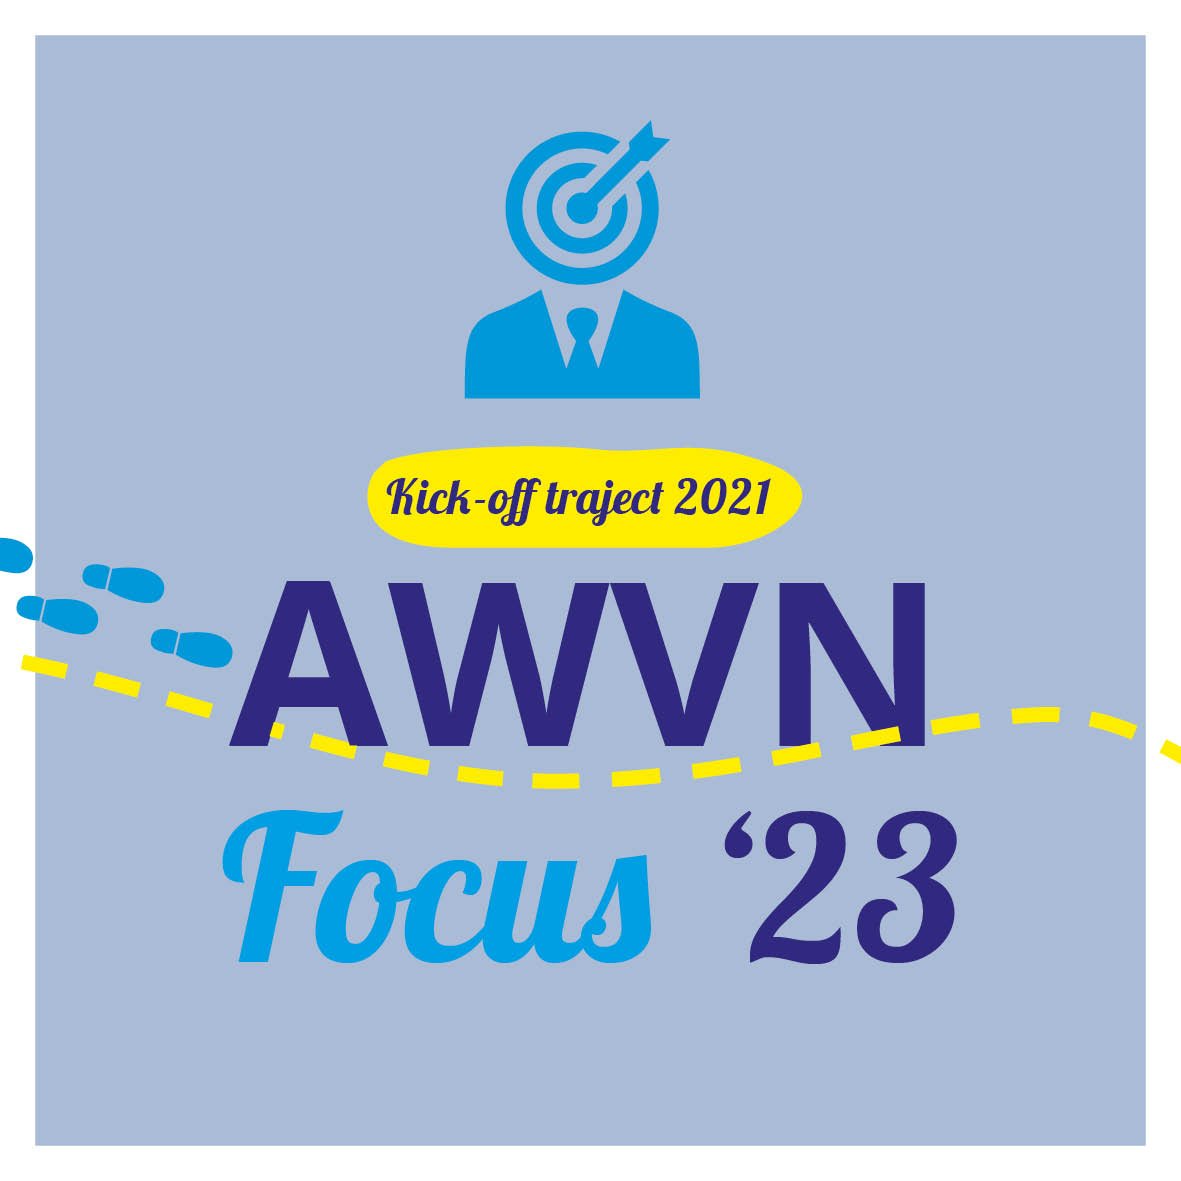 AWVN Focus.jpg